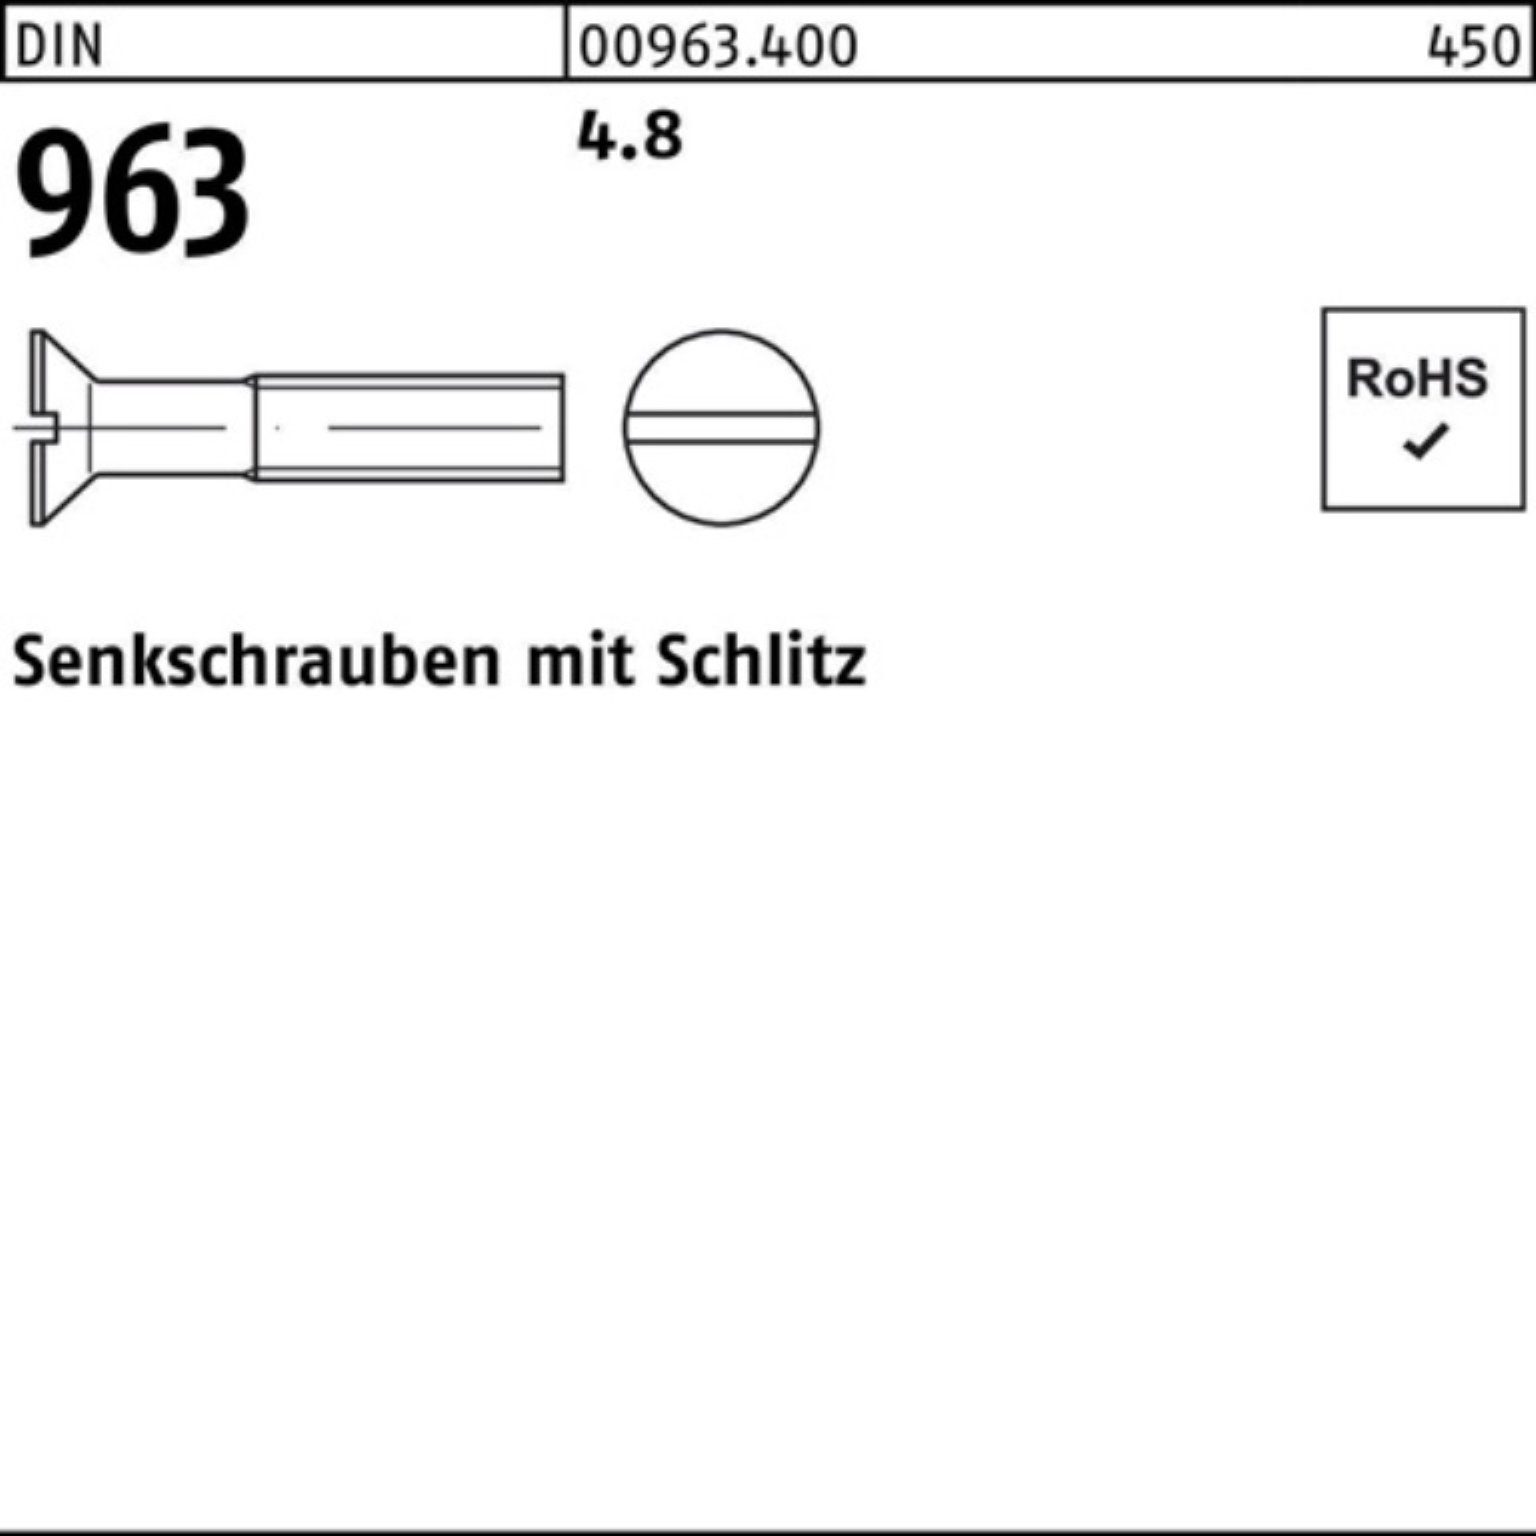 Reyher Senkschraube 2000 DIN 16 2000er DIN 96 Stück 963 Pack M4x Schlitz Senkschraube 4.8